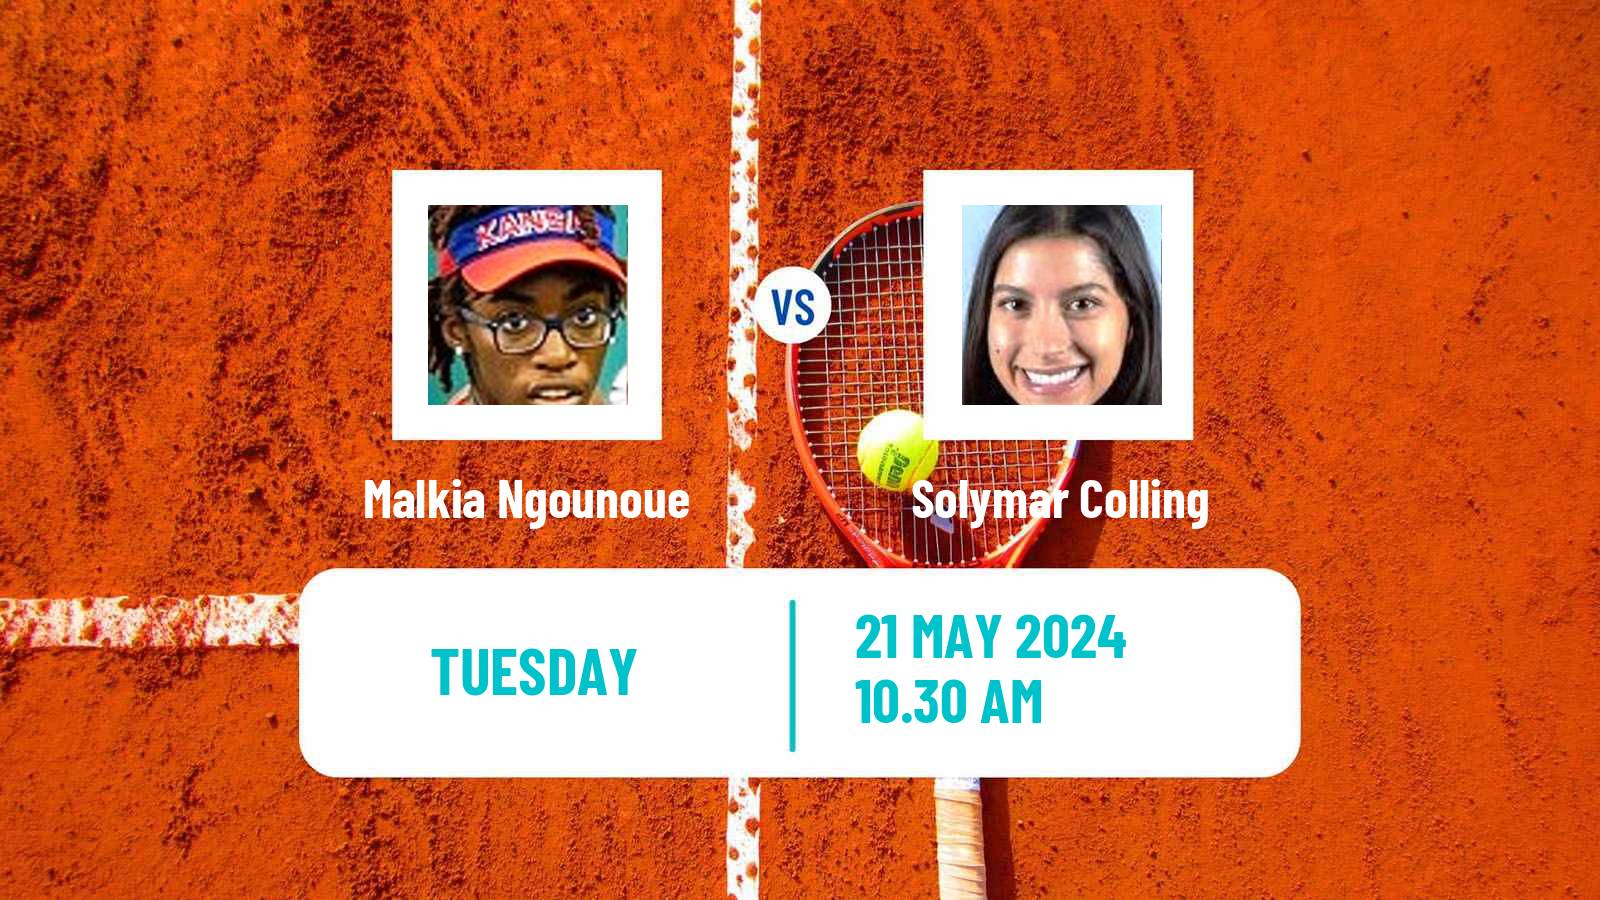 Tennis ITF W35 Santo Domingo 3 Women Malkia Ngounoue - Solymar Colling